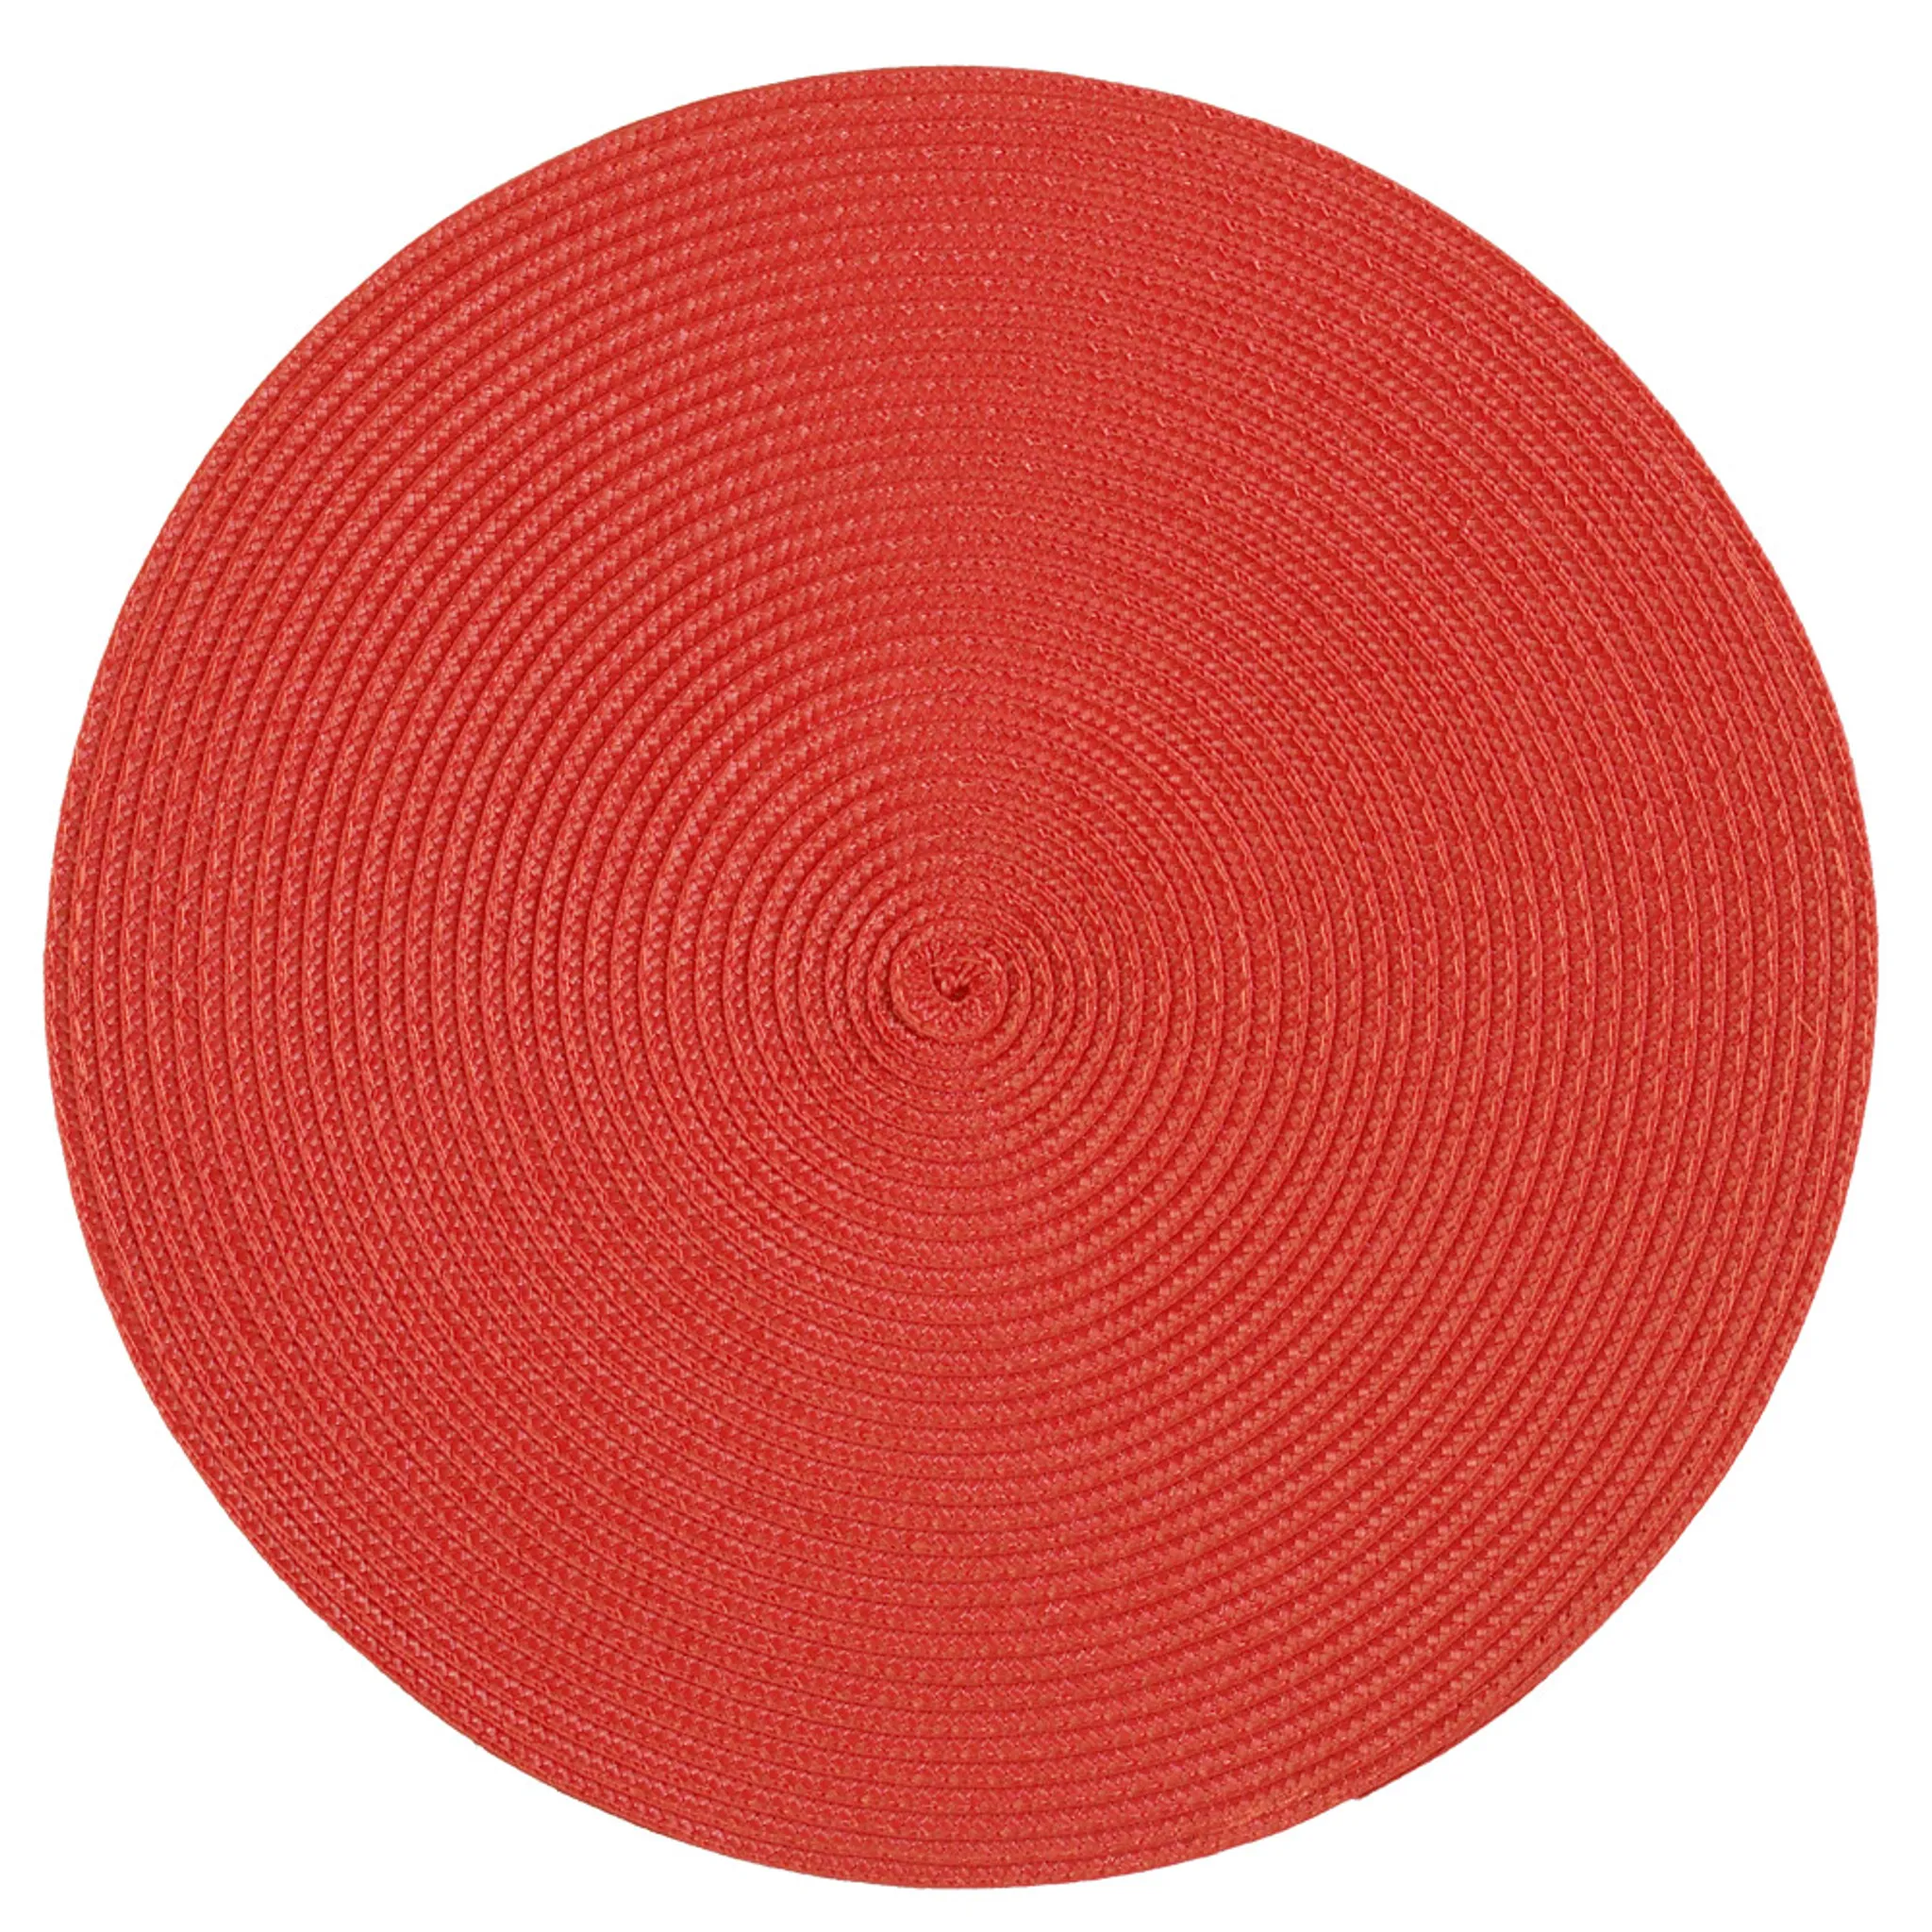 Platzset Polypro Rot rund cm ca. 35 Ø